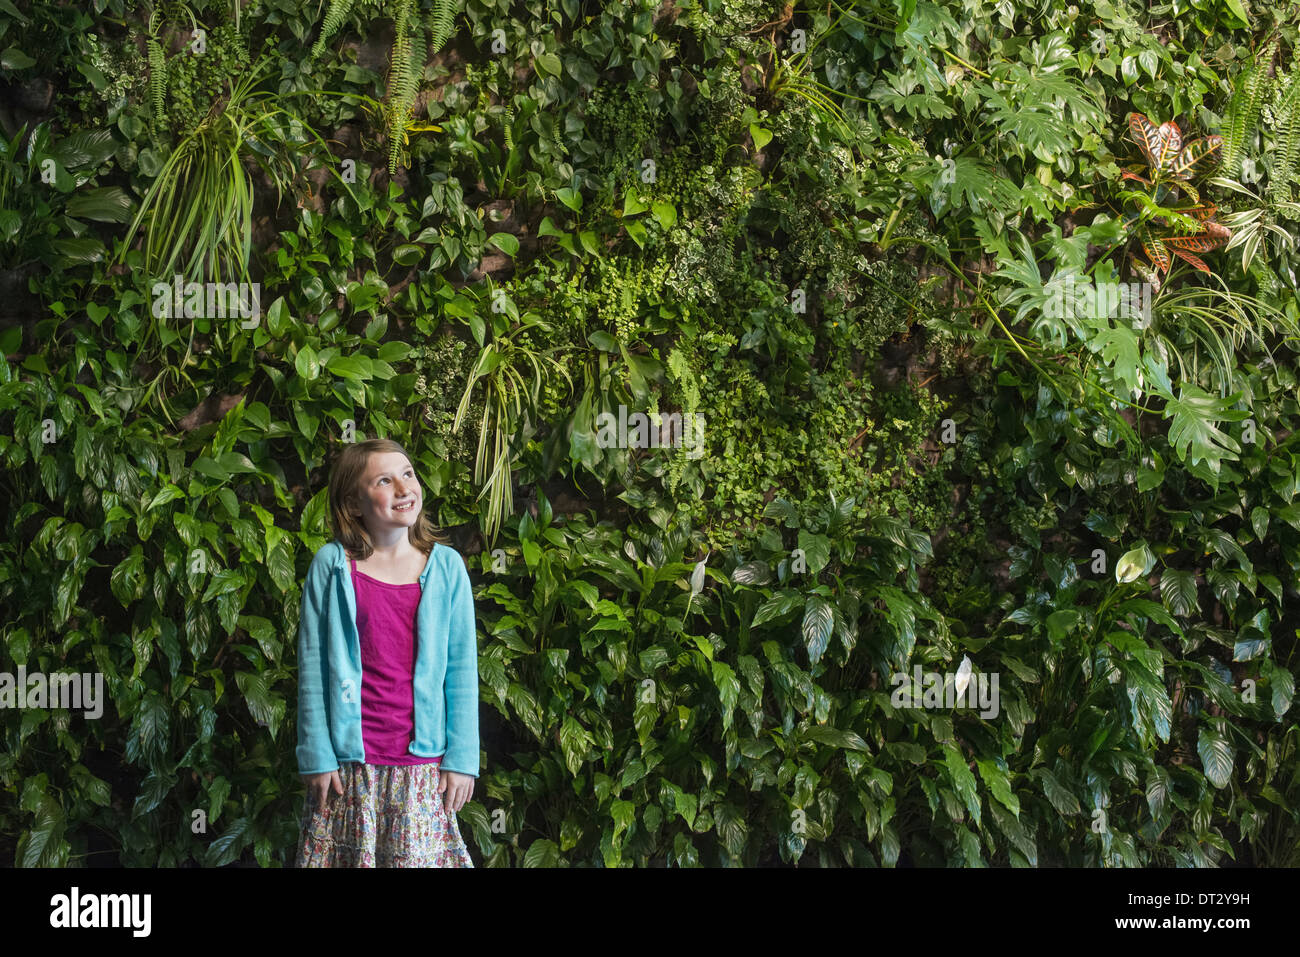 Ville au printemps un mode de vie urbain une jeune fille debout devant un mur recouvert de fougères et plantes grimpantes Banque D'Images